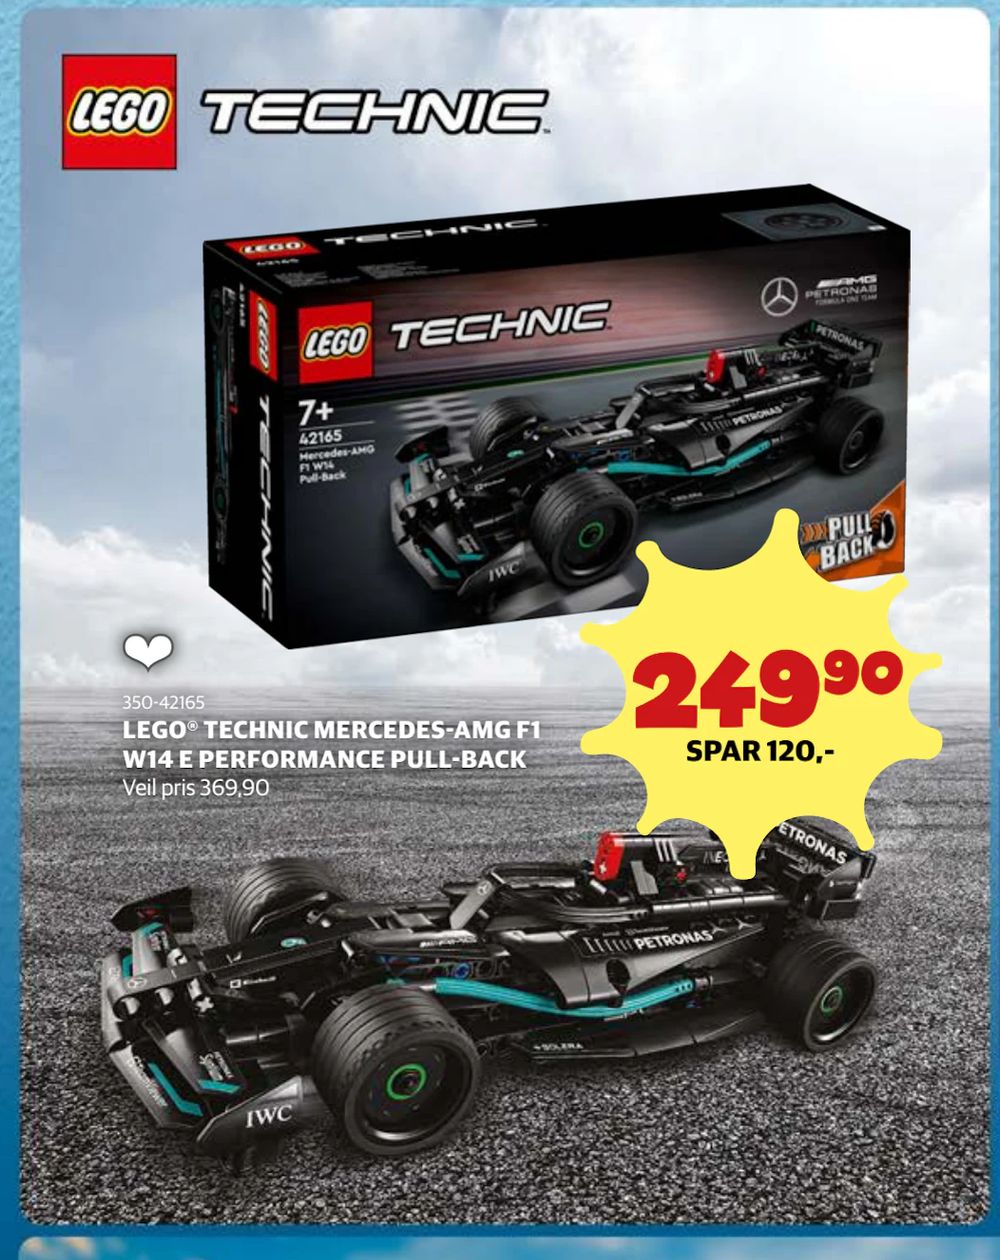 Tilbud på LEGO® TECHNIC MERCEDES-AMG F1 W14 E PERFORMANCE PULL-BACK fra Lekia til 249,90 kr